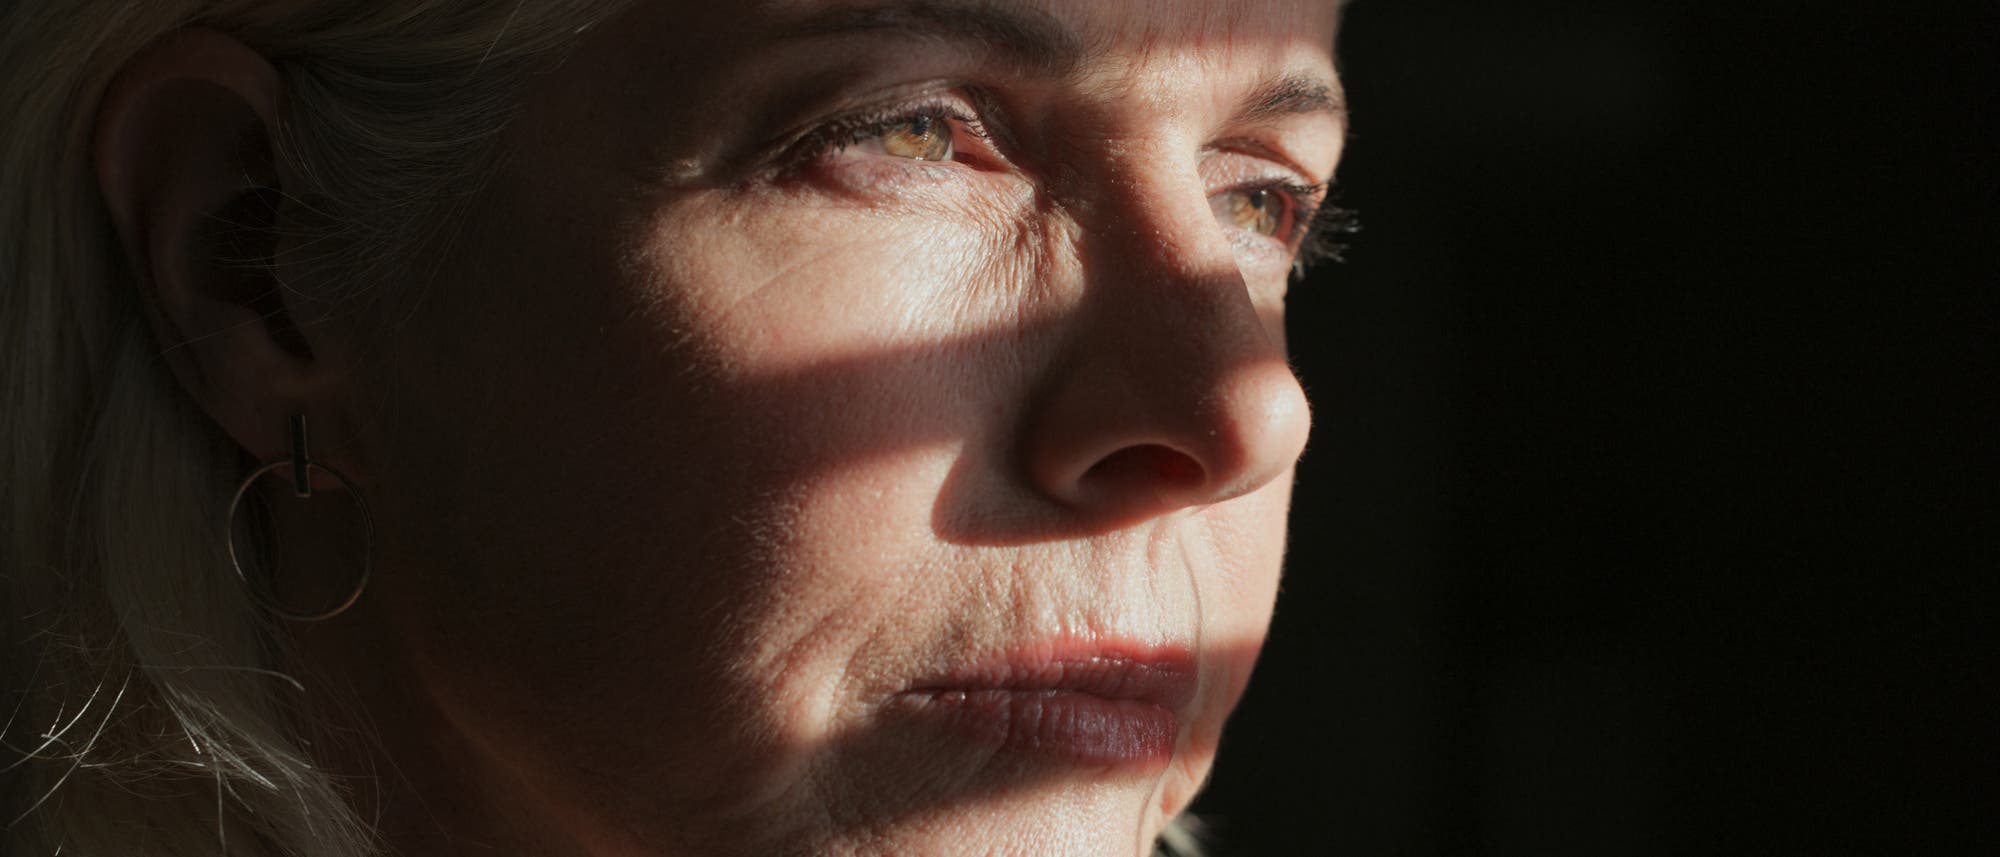 Gesicht einer ernst blickenden Frau in Großaufnahme, teilweise im Schatten, teilweise beleuchtet